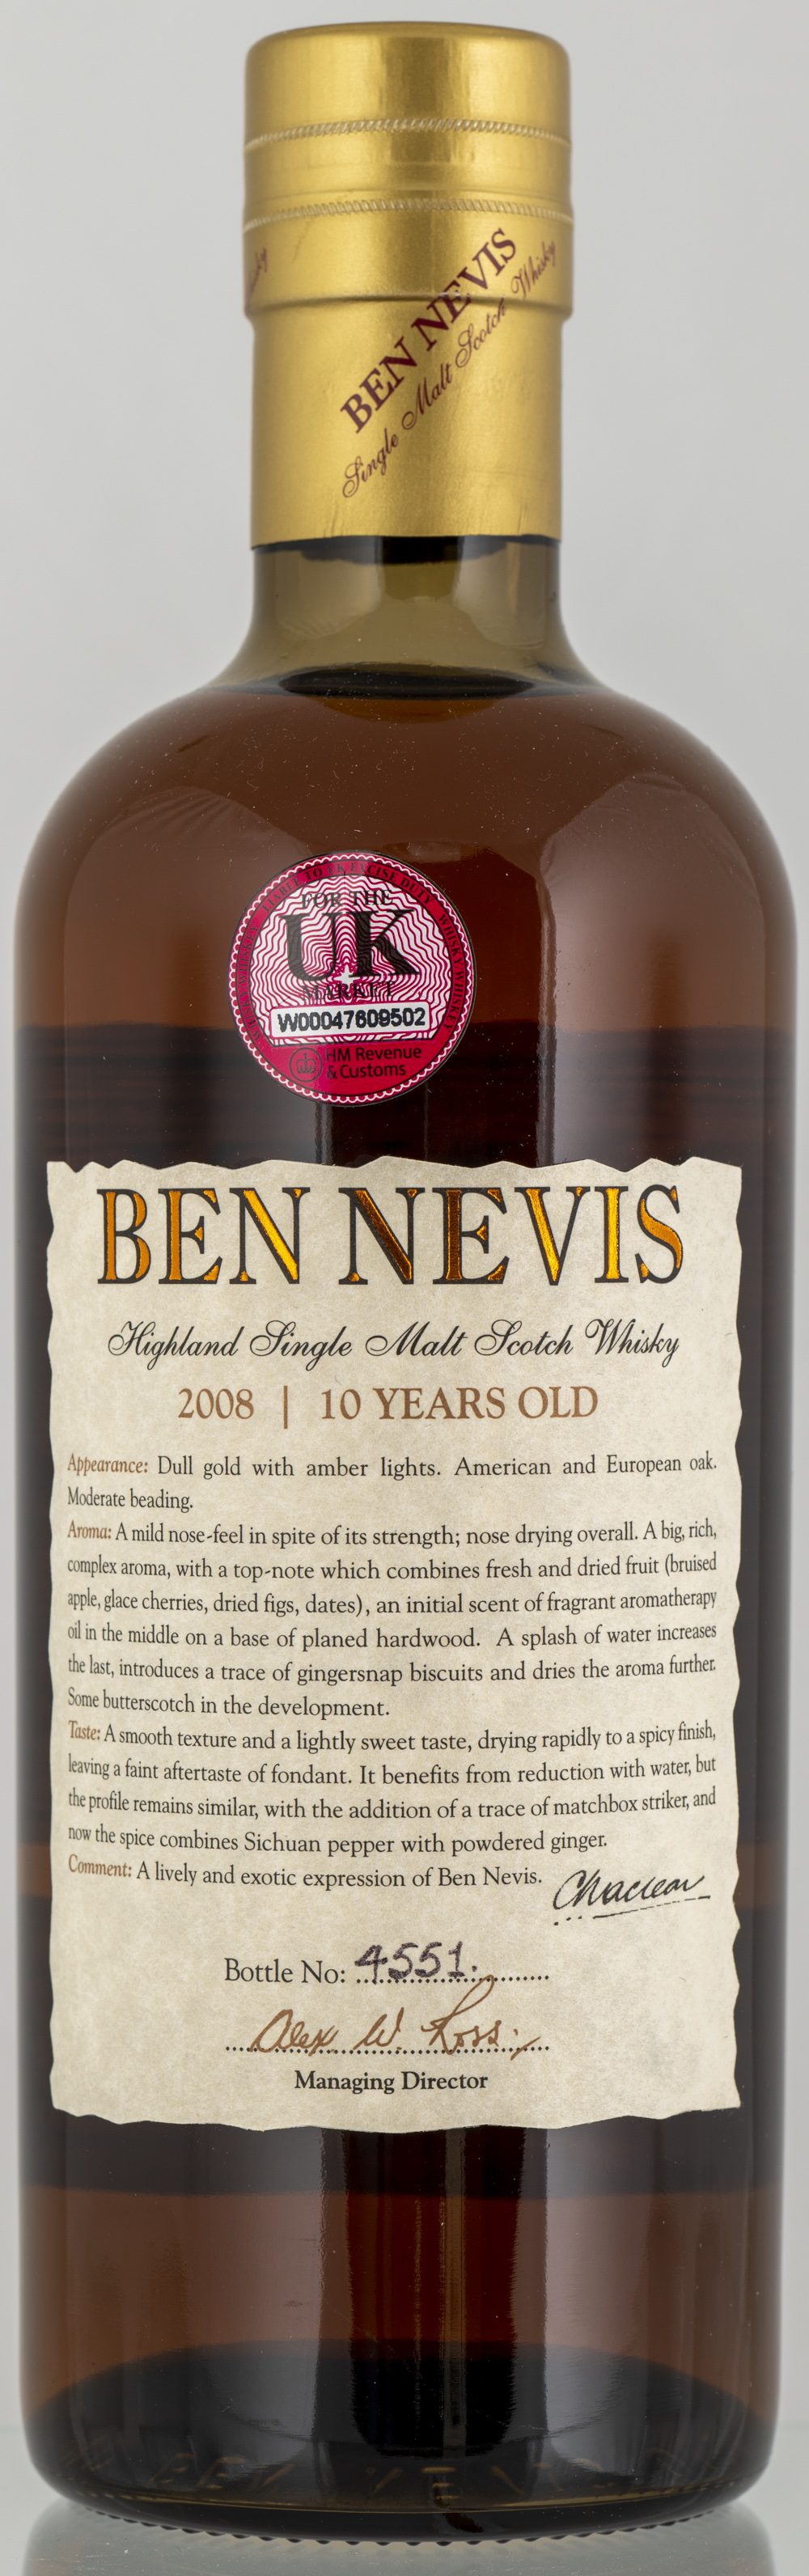 Billede: PHC_2585 - Ben Nevis 10 Batch No. 1 Limited Edition - bottle back.jpg